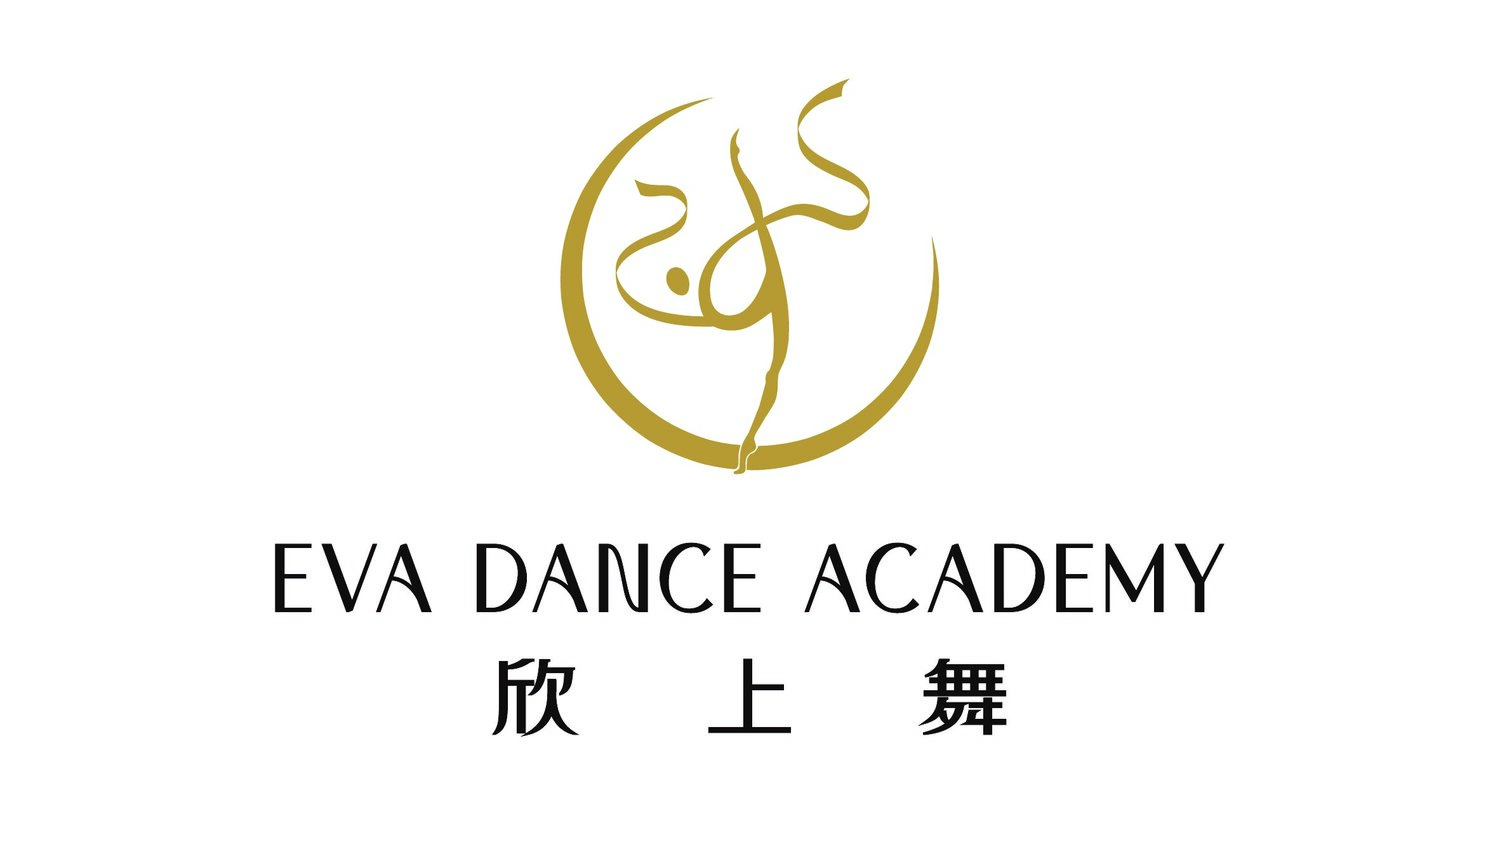 EVA DANCE ACADEMY